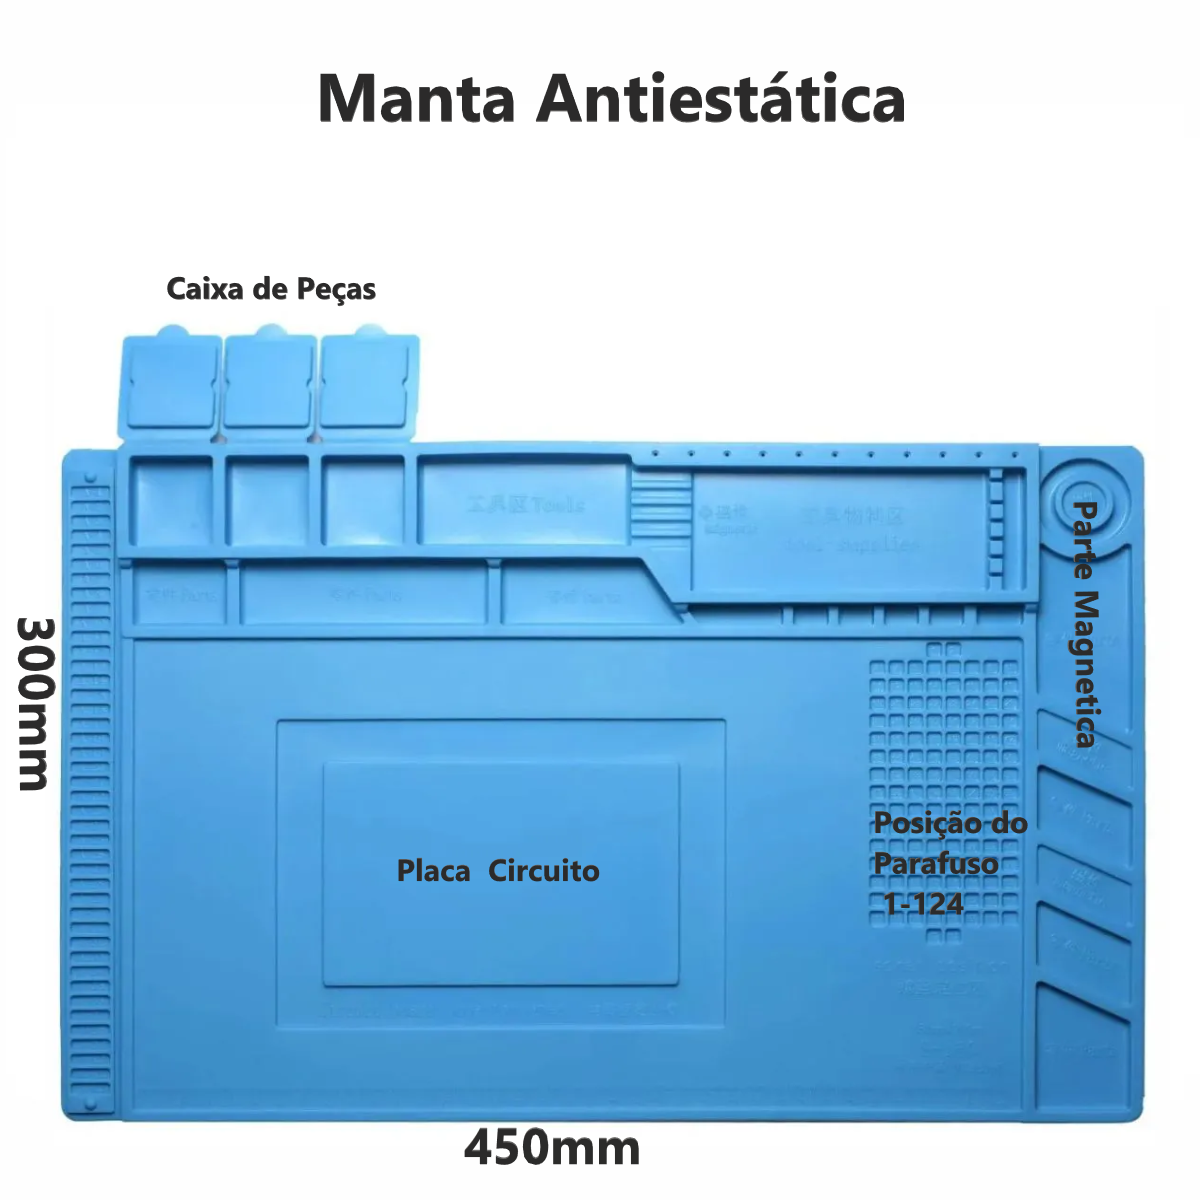 Manta Antiestática Magnêtica Pulseira com Fio Luva - 3